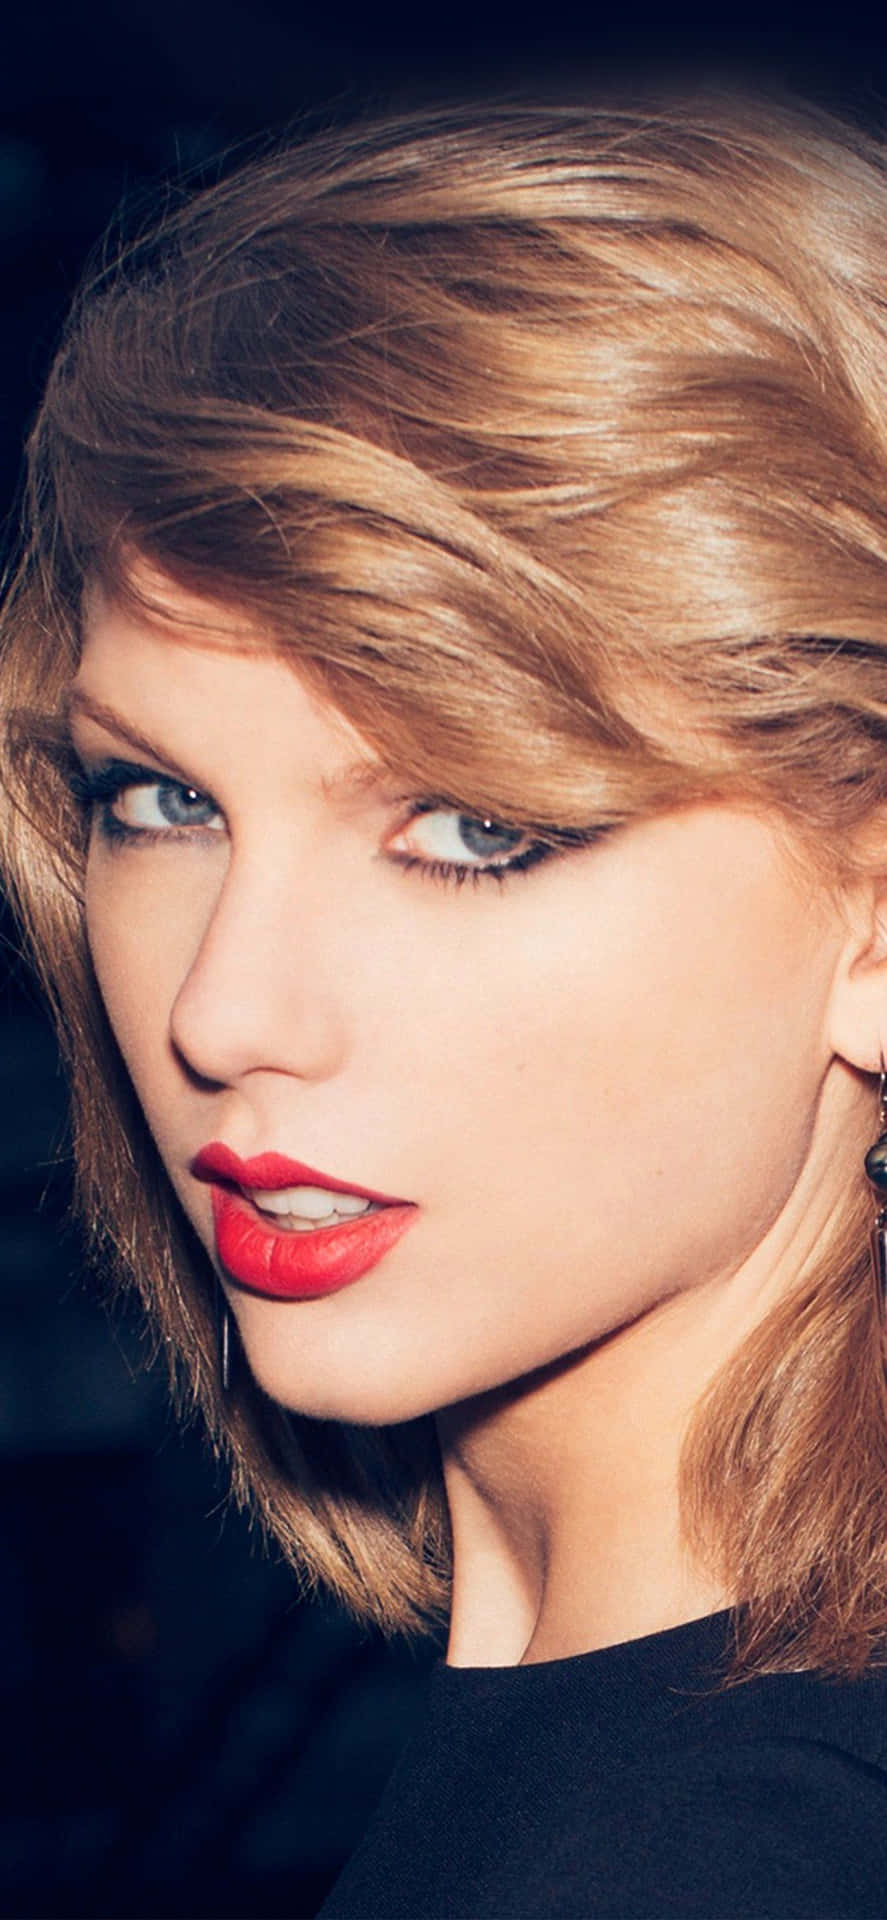 Wallpaper!gör Dig Redo Att Rocka Loss Med Taylor Swifts Officiella Iphone-bakgrundsbild! Wallpaper